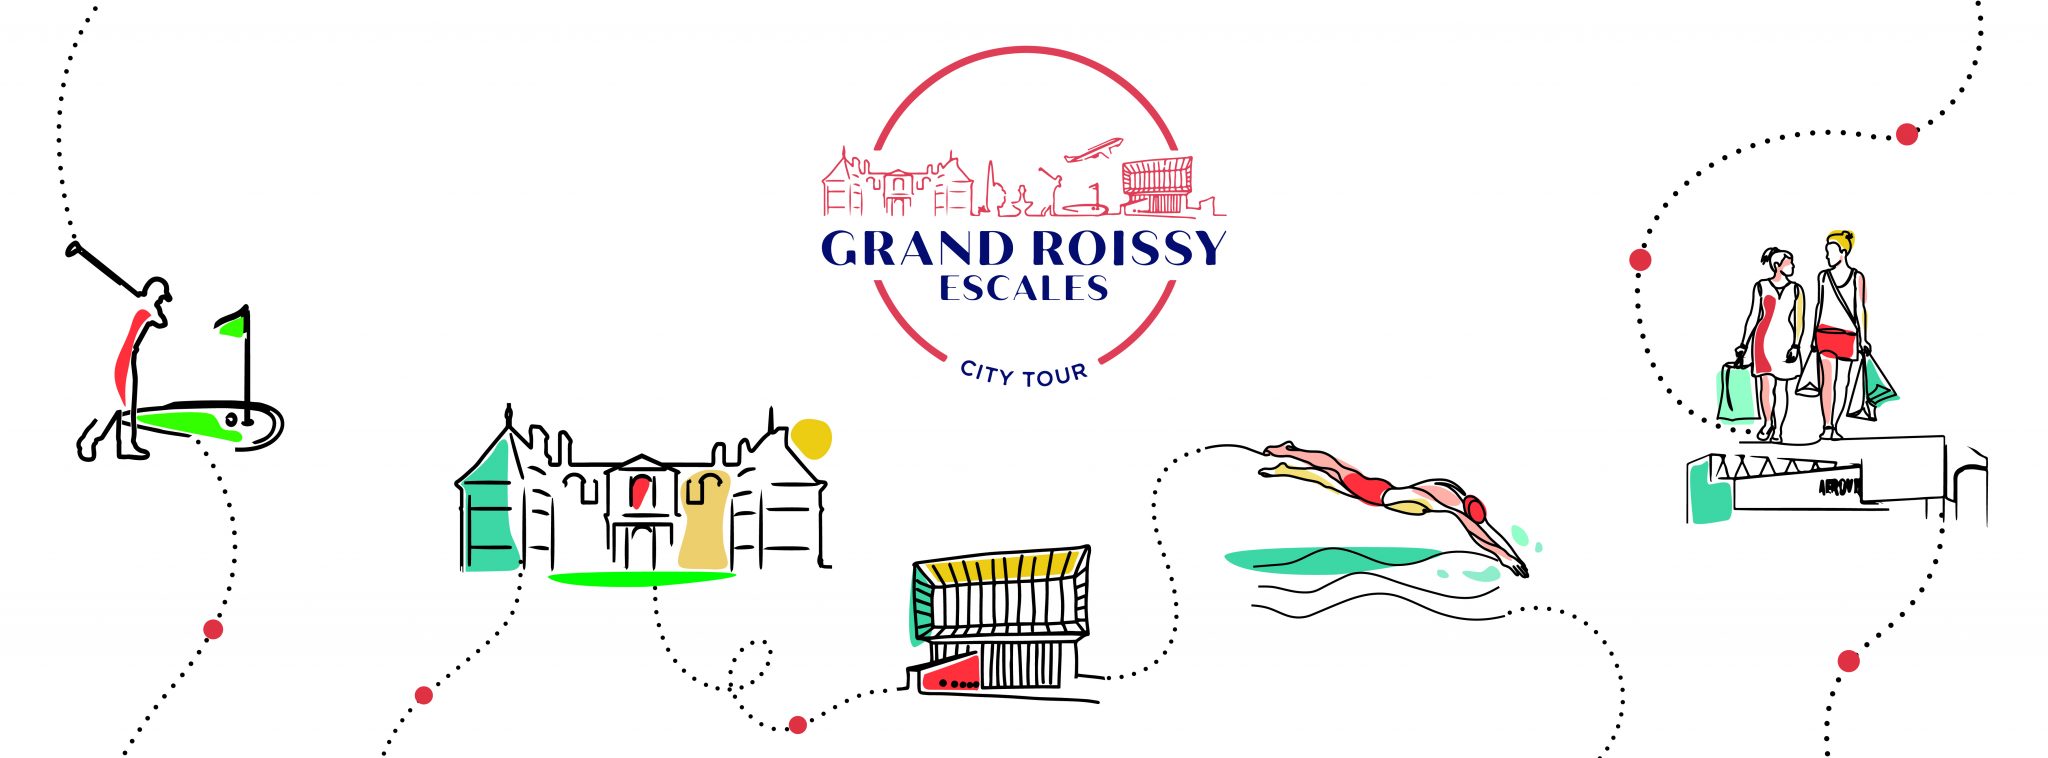 Das Fremdenverkehrsamt von Grand Roissy startet seine Stadtrundfahrt